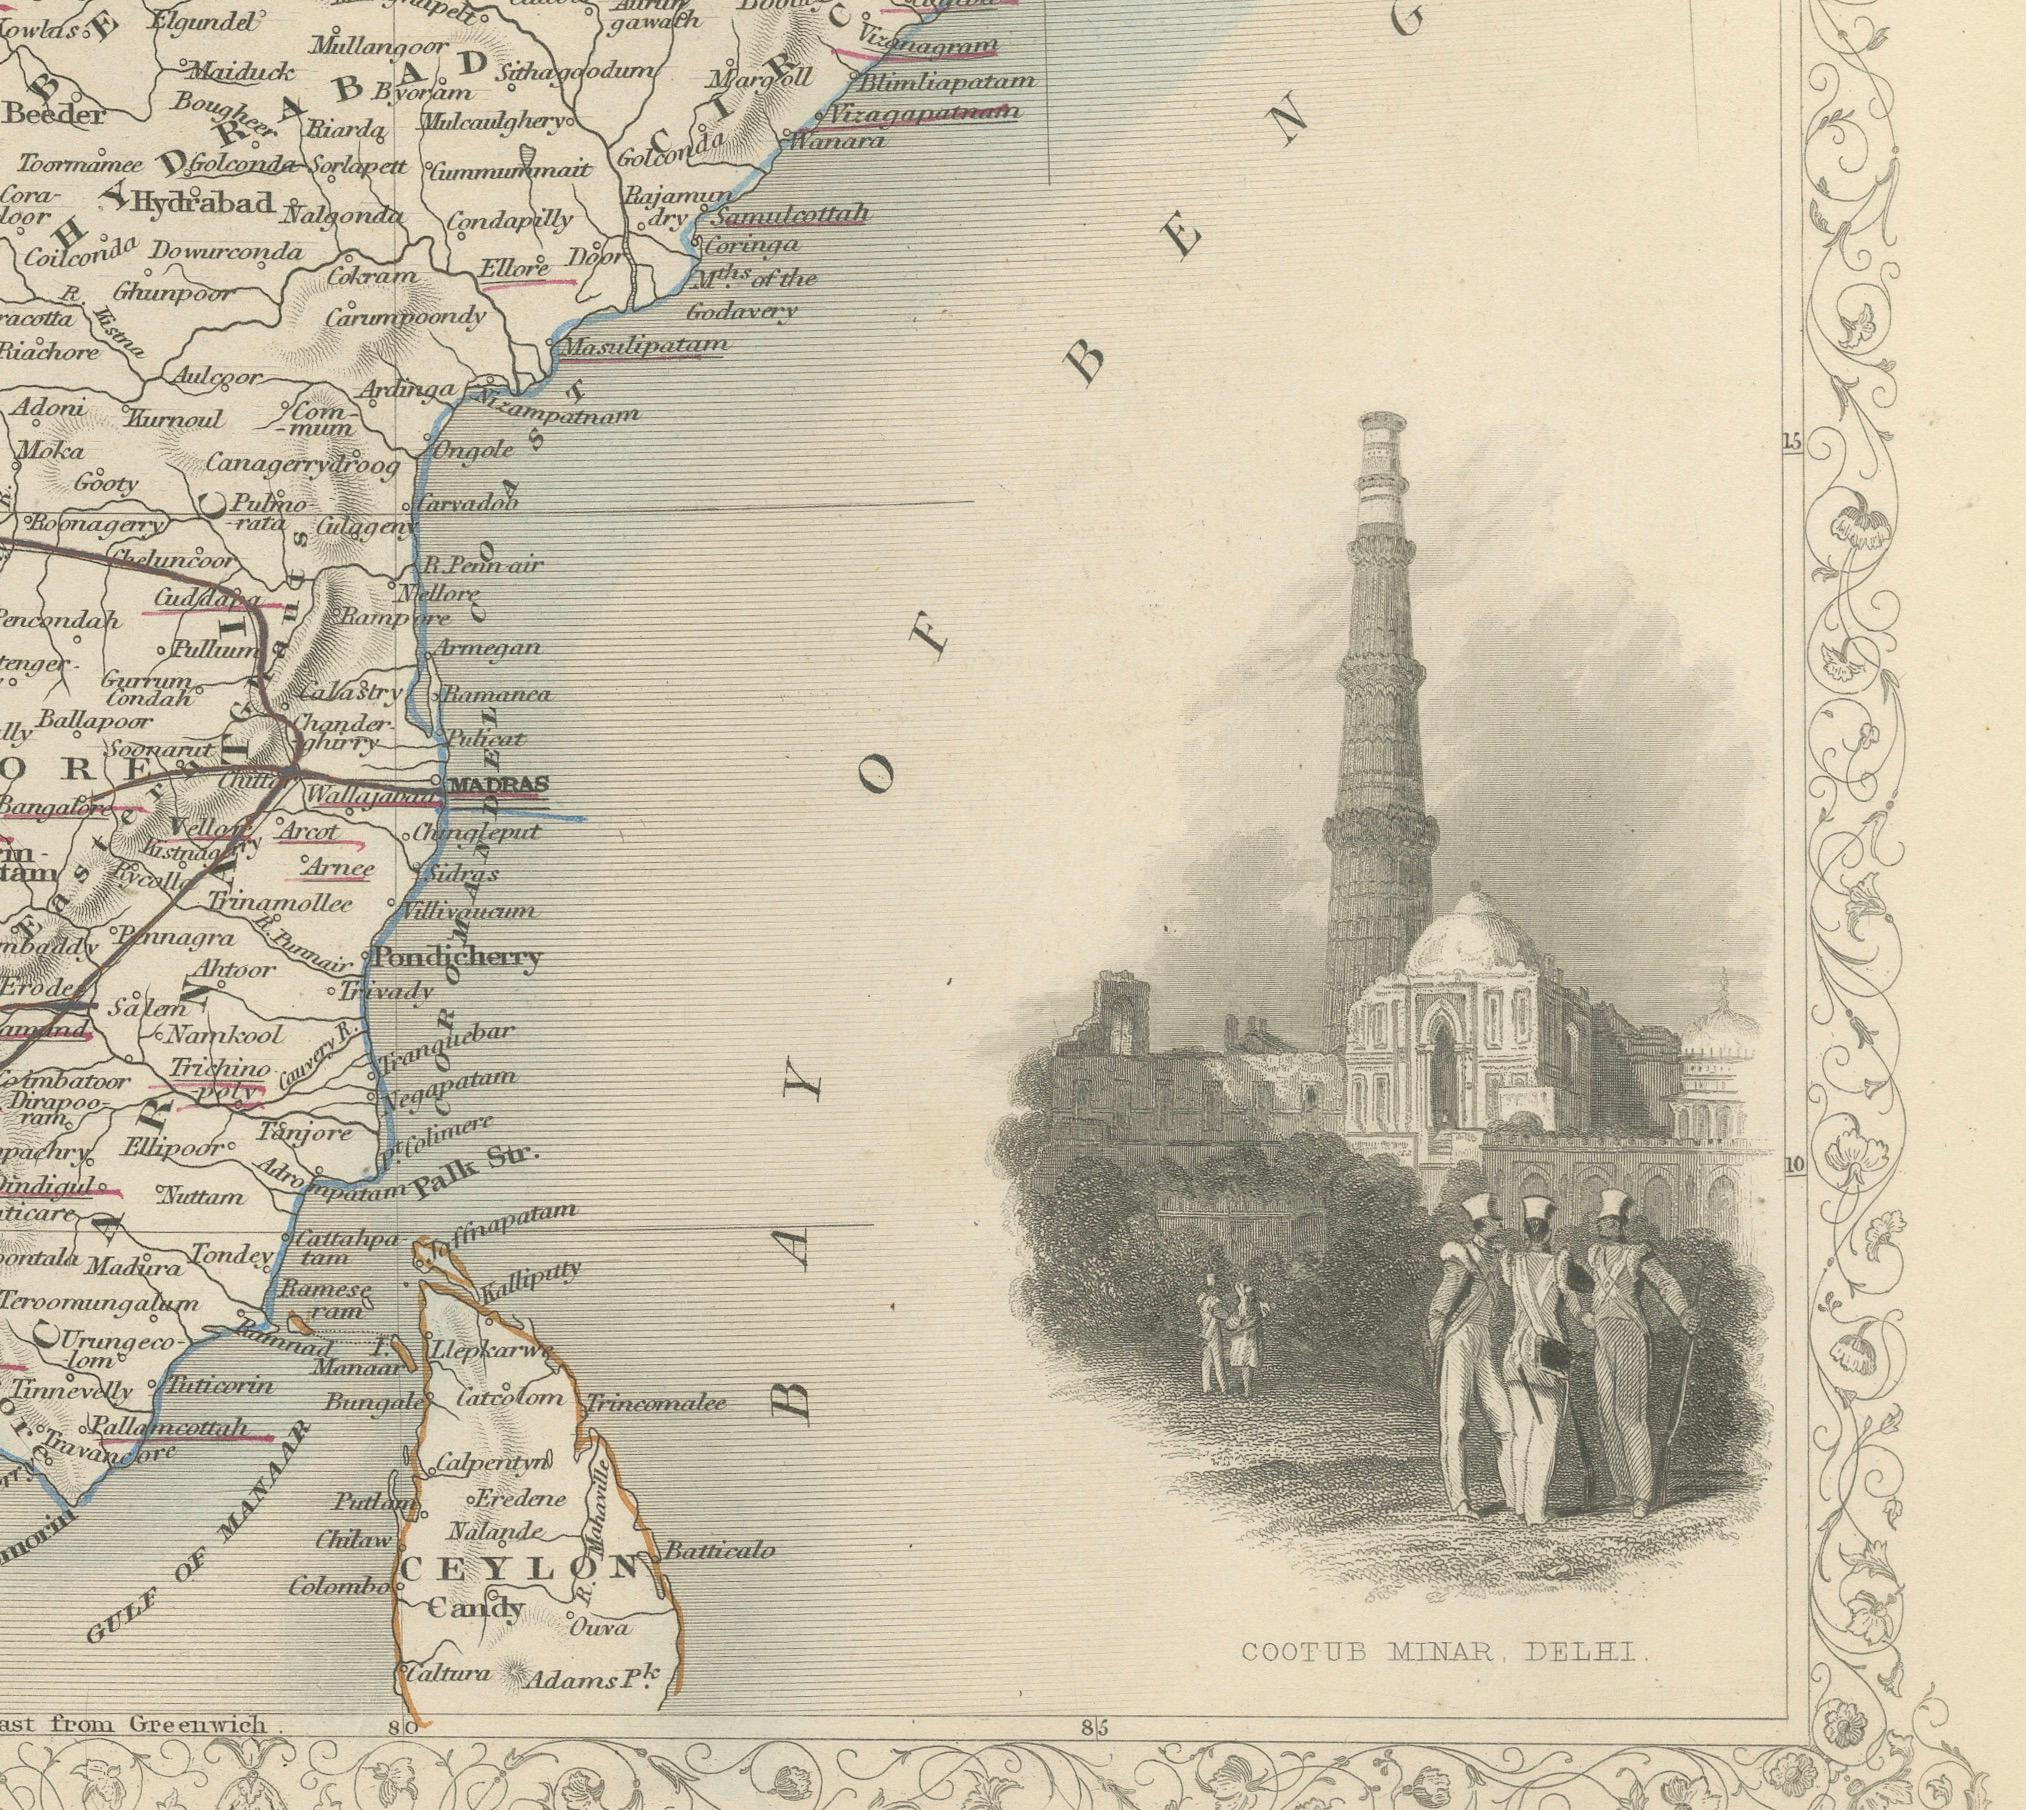 Die Tallis-Karten, einschließlich der Karte von Indien, sind für ihren detaillierten und ornamentalen Stil bekannt. Sie wurden in der Mitte des 19. Jahrhunderts hergestellt, einer Zeit, in der das kartografische Publizieren sowohl eine Kunstform als